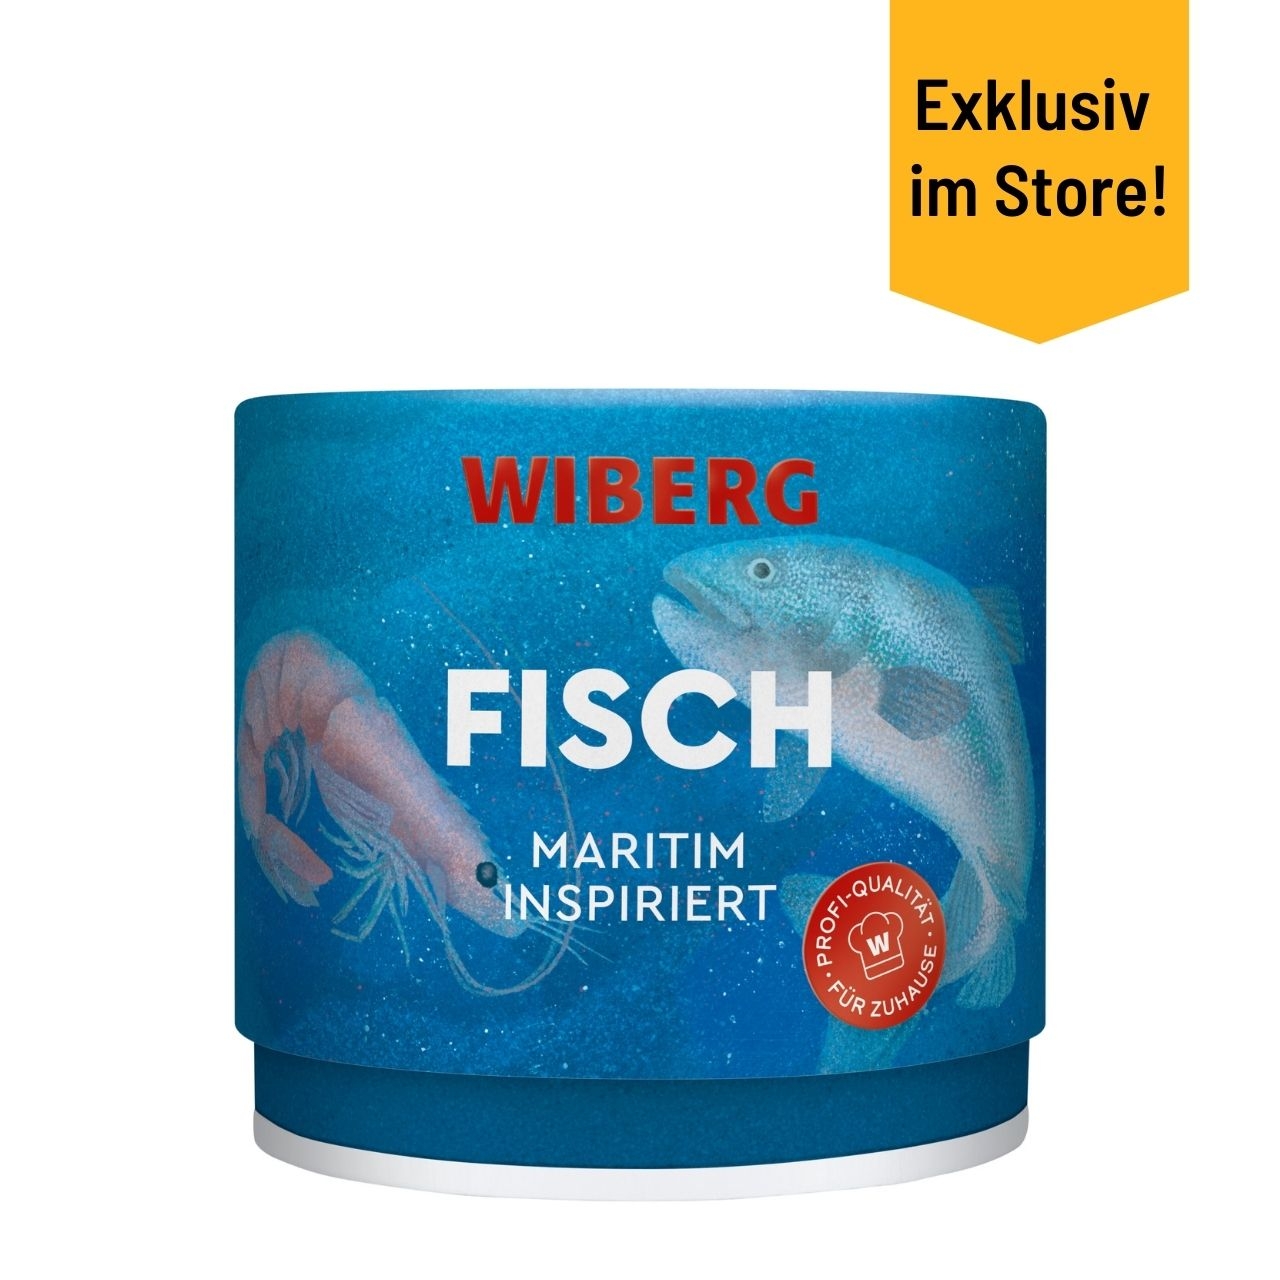 Wiberg - Fisch - maritim inspiriert, 110 g